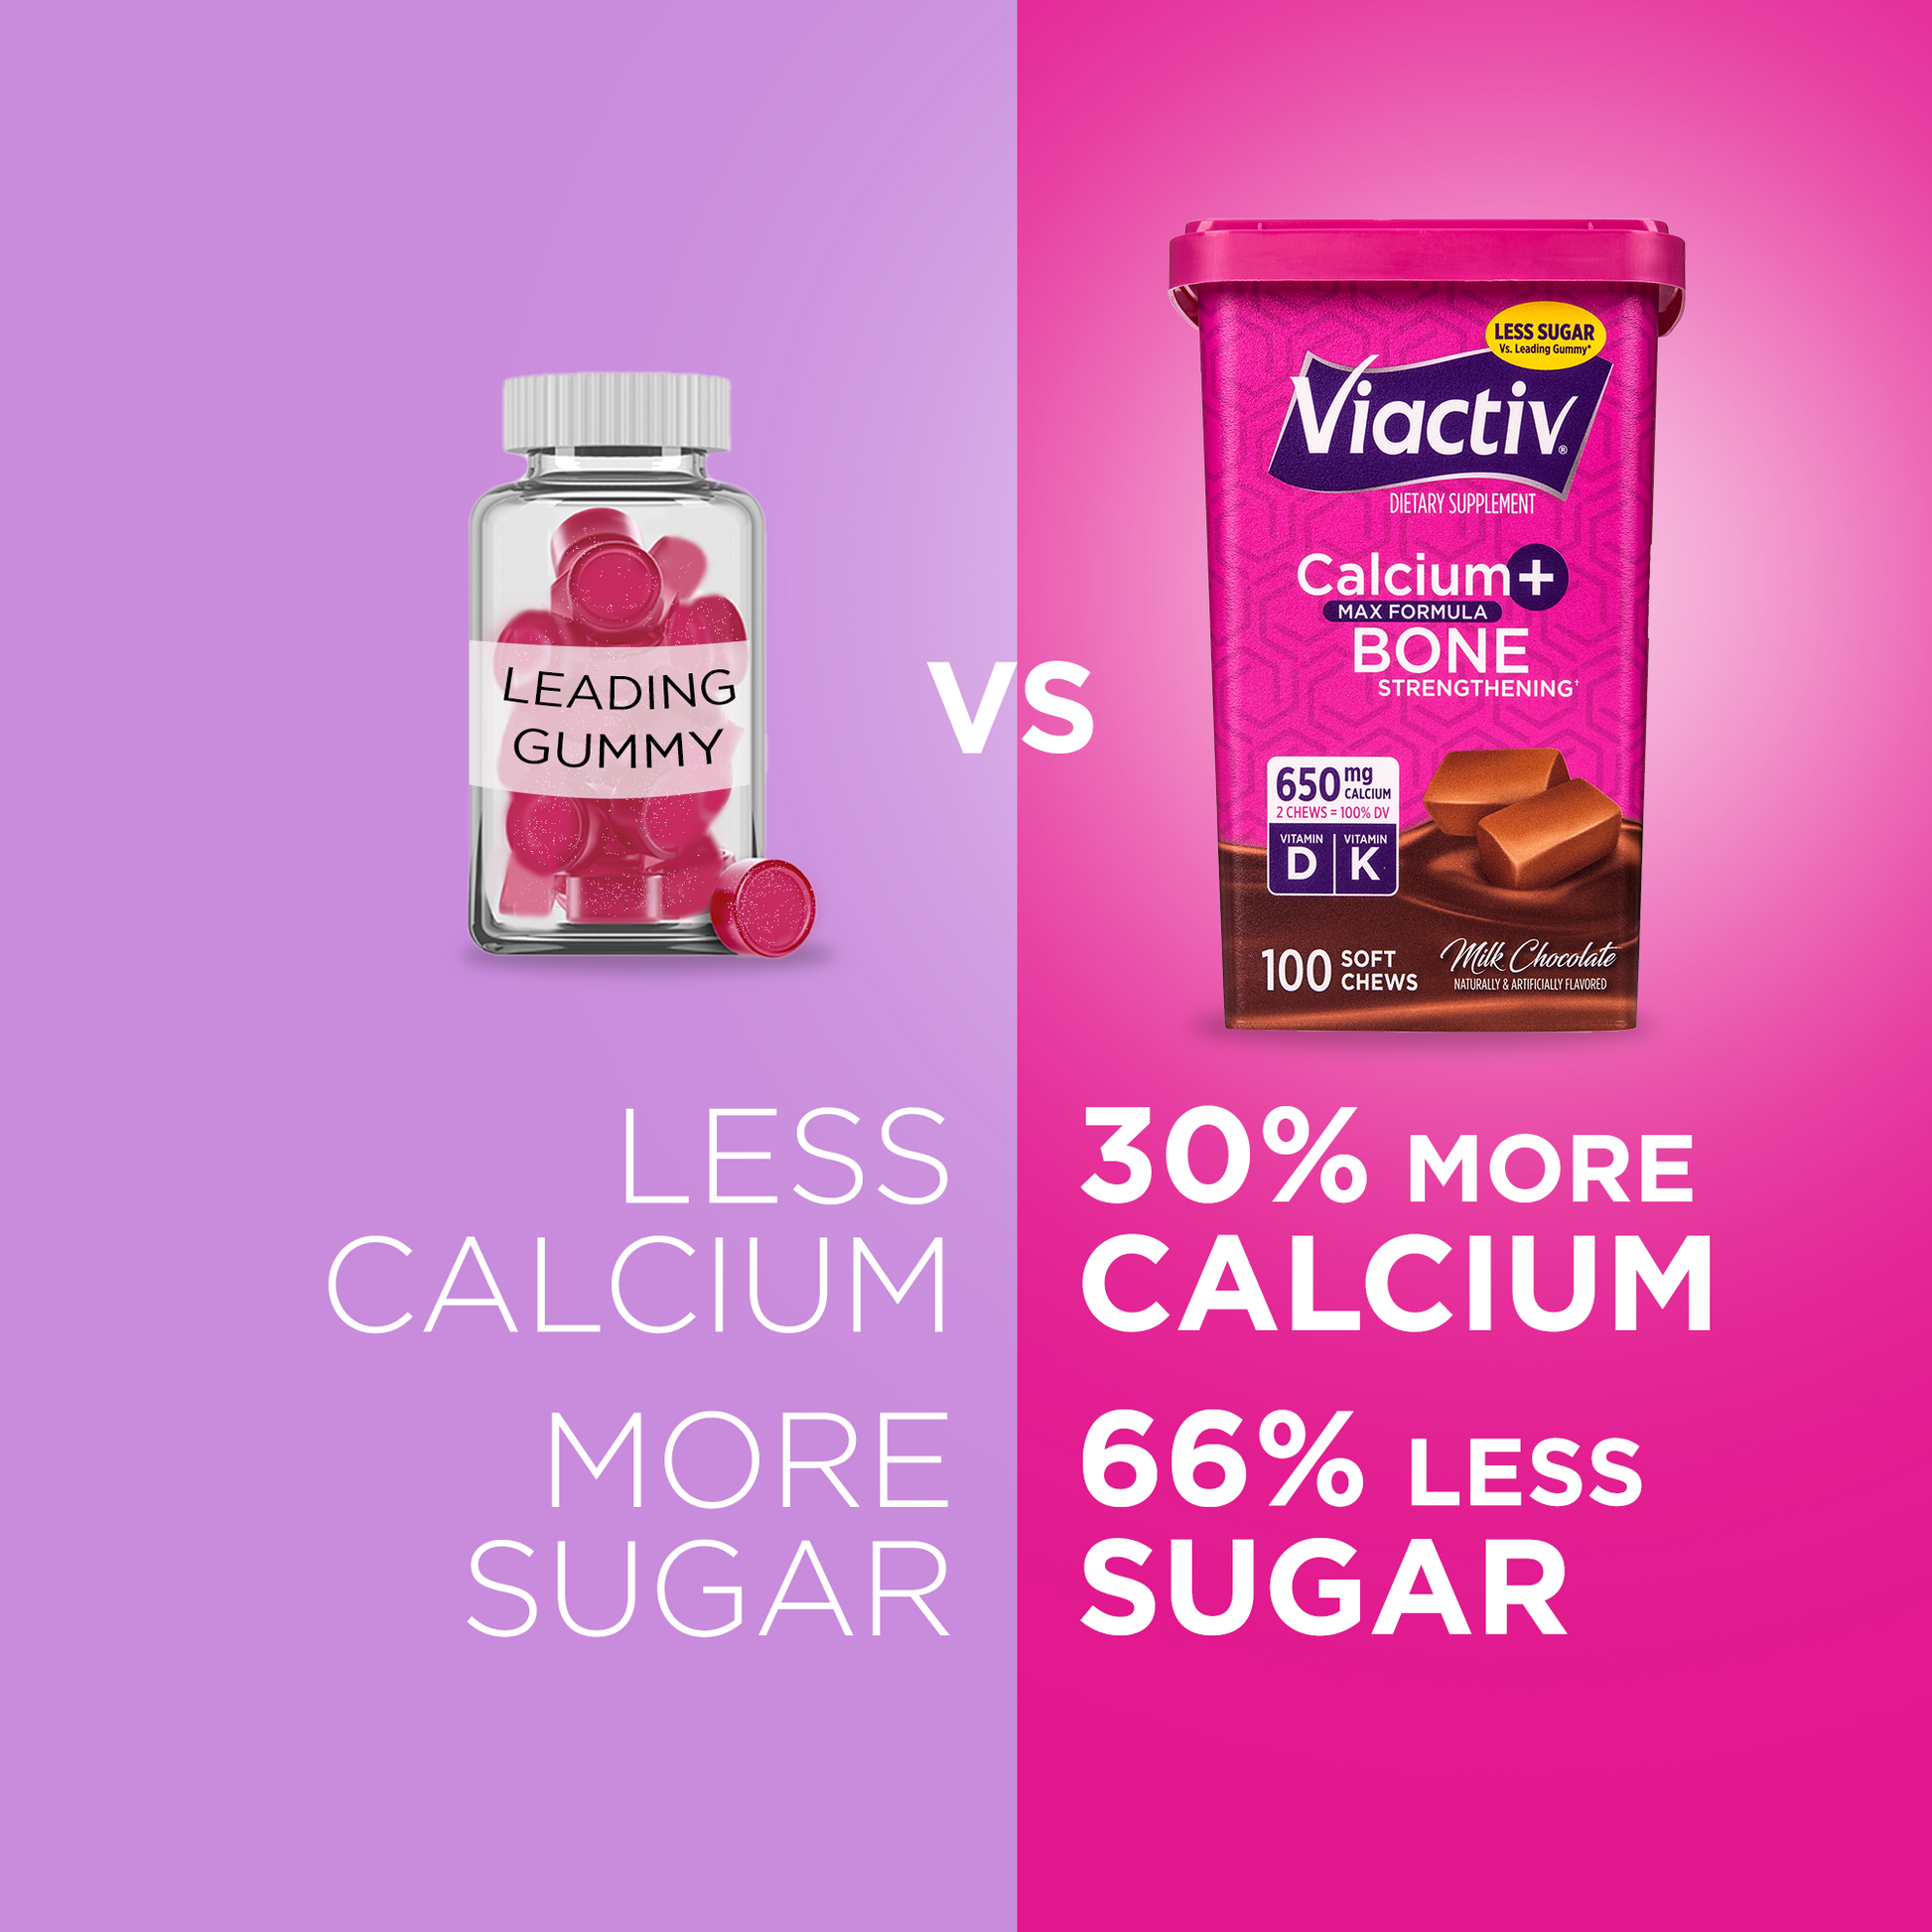 Viactiv chocolate calcium chews have 30% more calcium and 66% less sugar than gummies